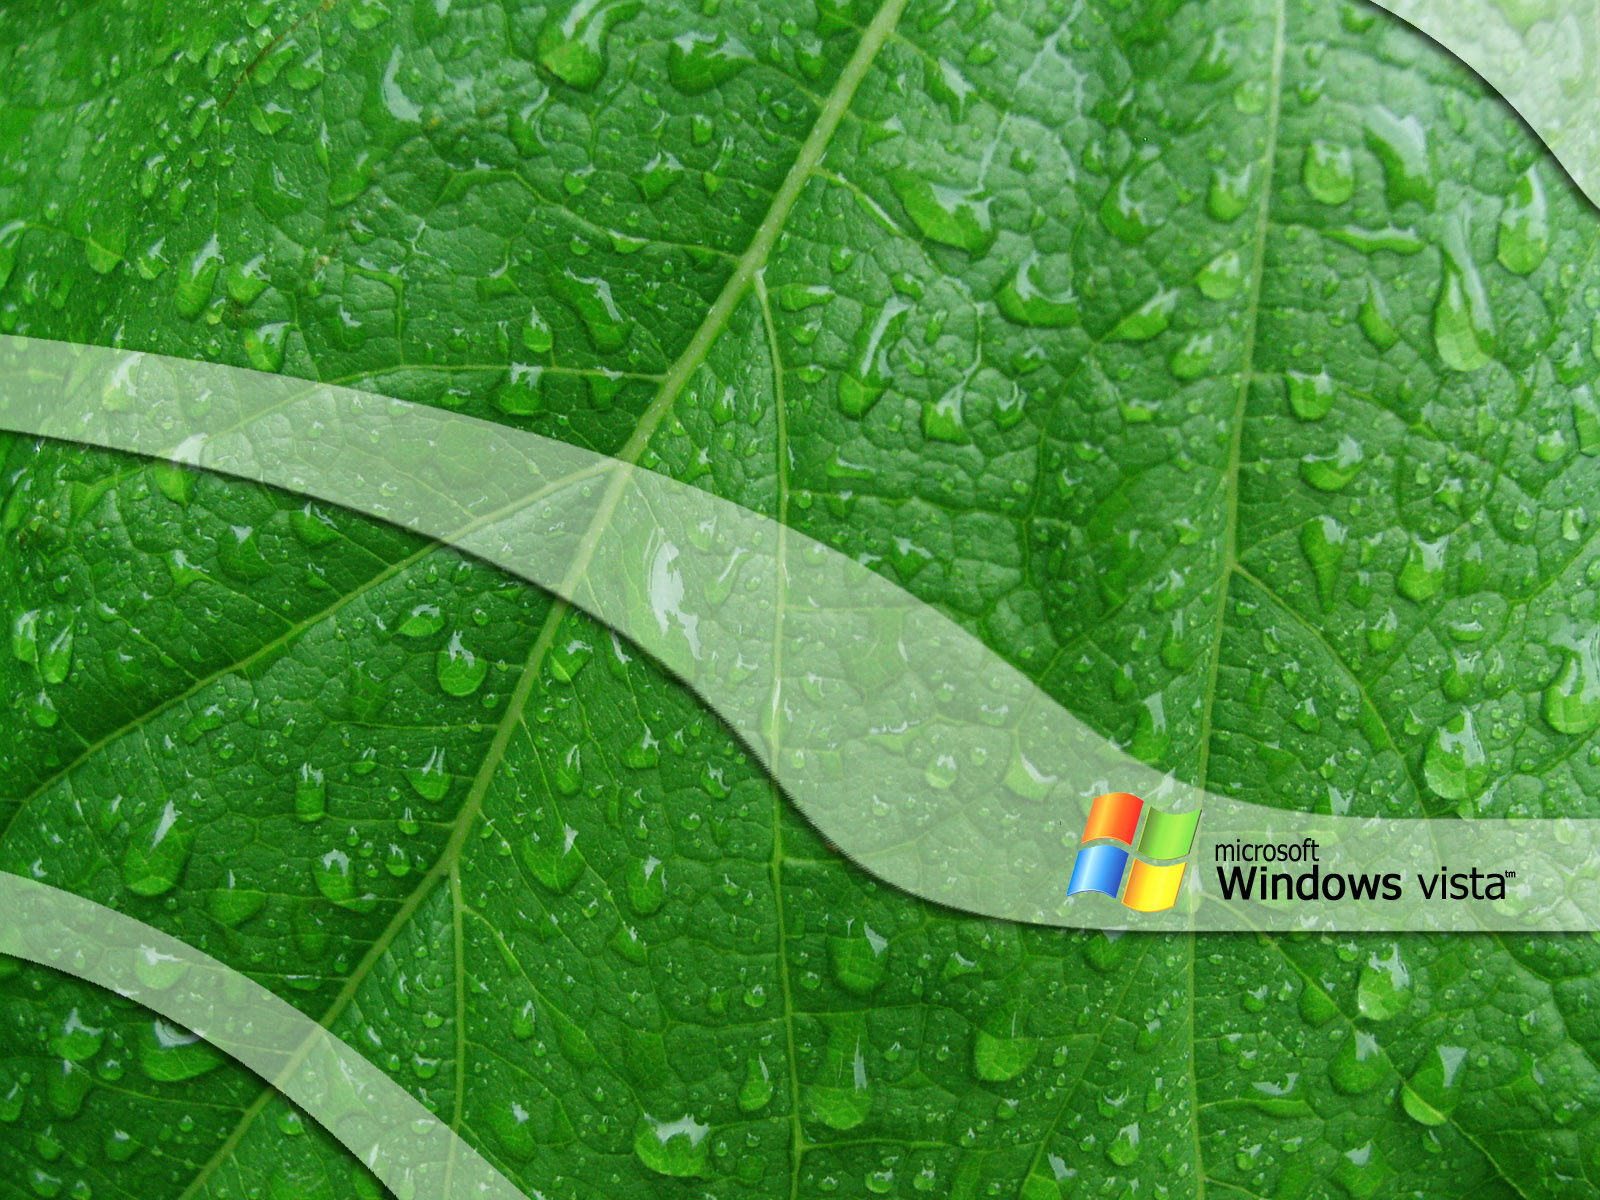 http://1.bp.blogspot.com/_RAlP3BmEW1Q/TQYUaaXGYjI/AAAAAAAACi4/8yWg_zUwqgg/s1600/The-best-top-desktop-windows-vista-wallpapers-18.jpg